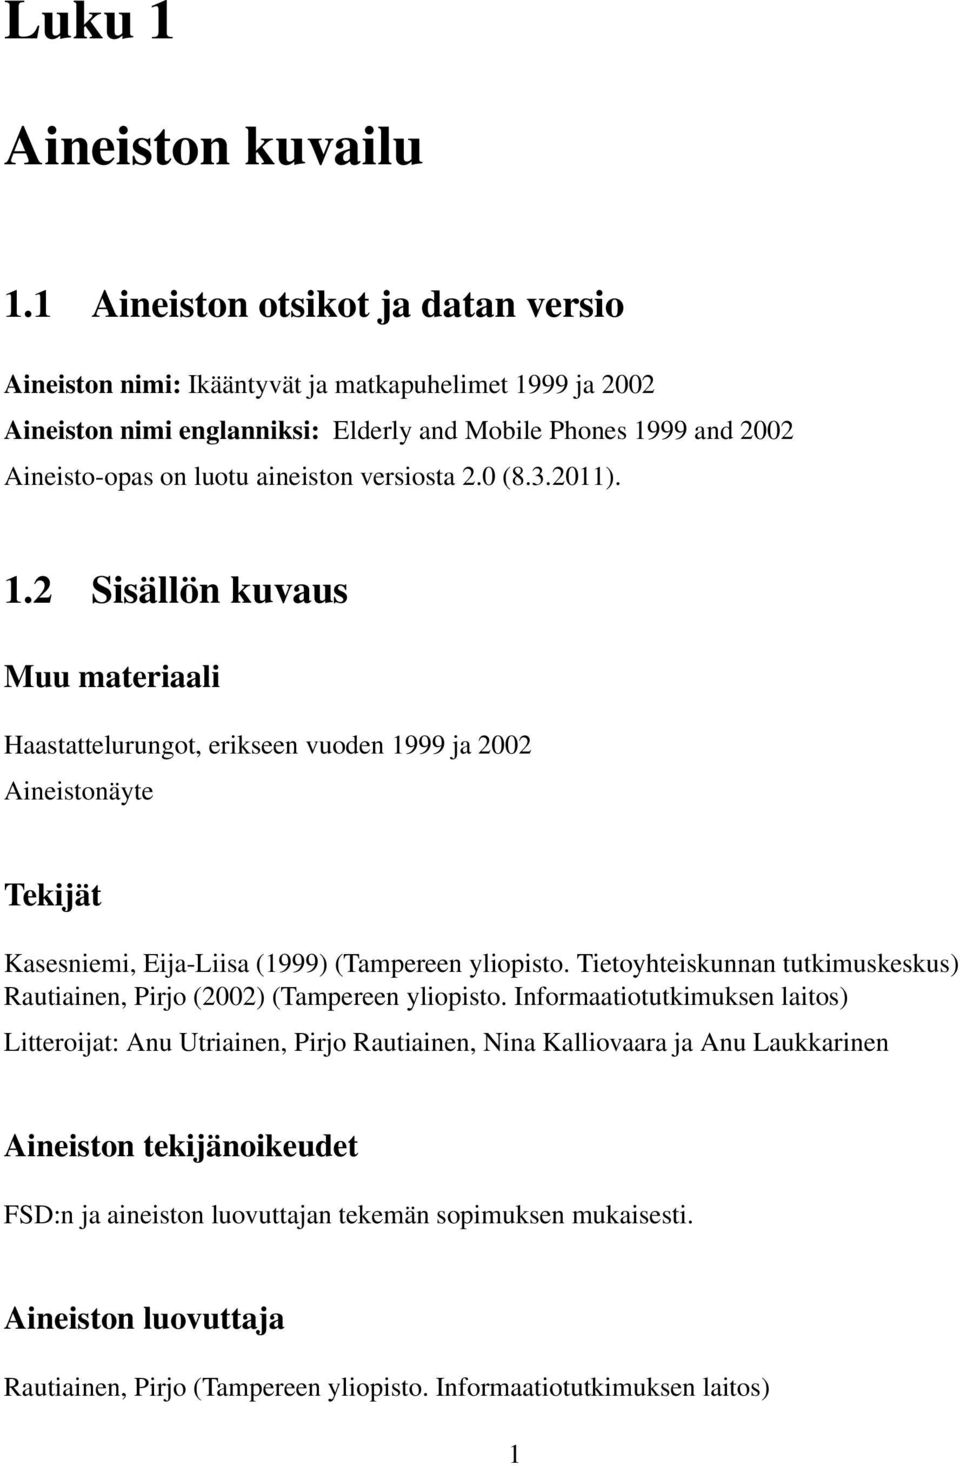 versiosta 2.0 (8.3.2011). 1.2 Sisällön kuvaus Muu materiaali Haastattelurungot, erikseen vuoden 1999 ja 2002 Aineistonäyte Tekijät Kasesniemi, Eija-Liisa (1999) (Tampereen yliopisto.